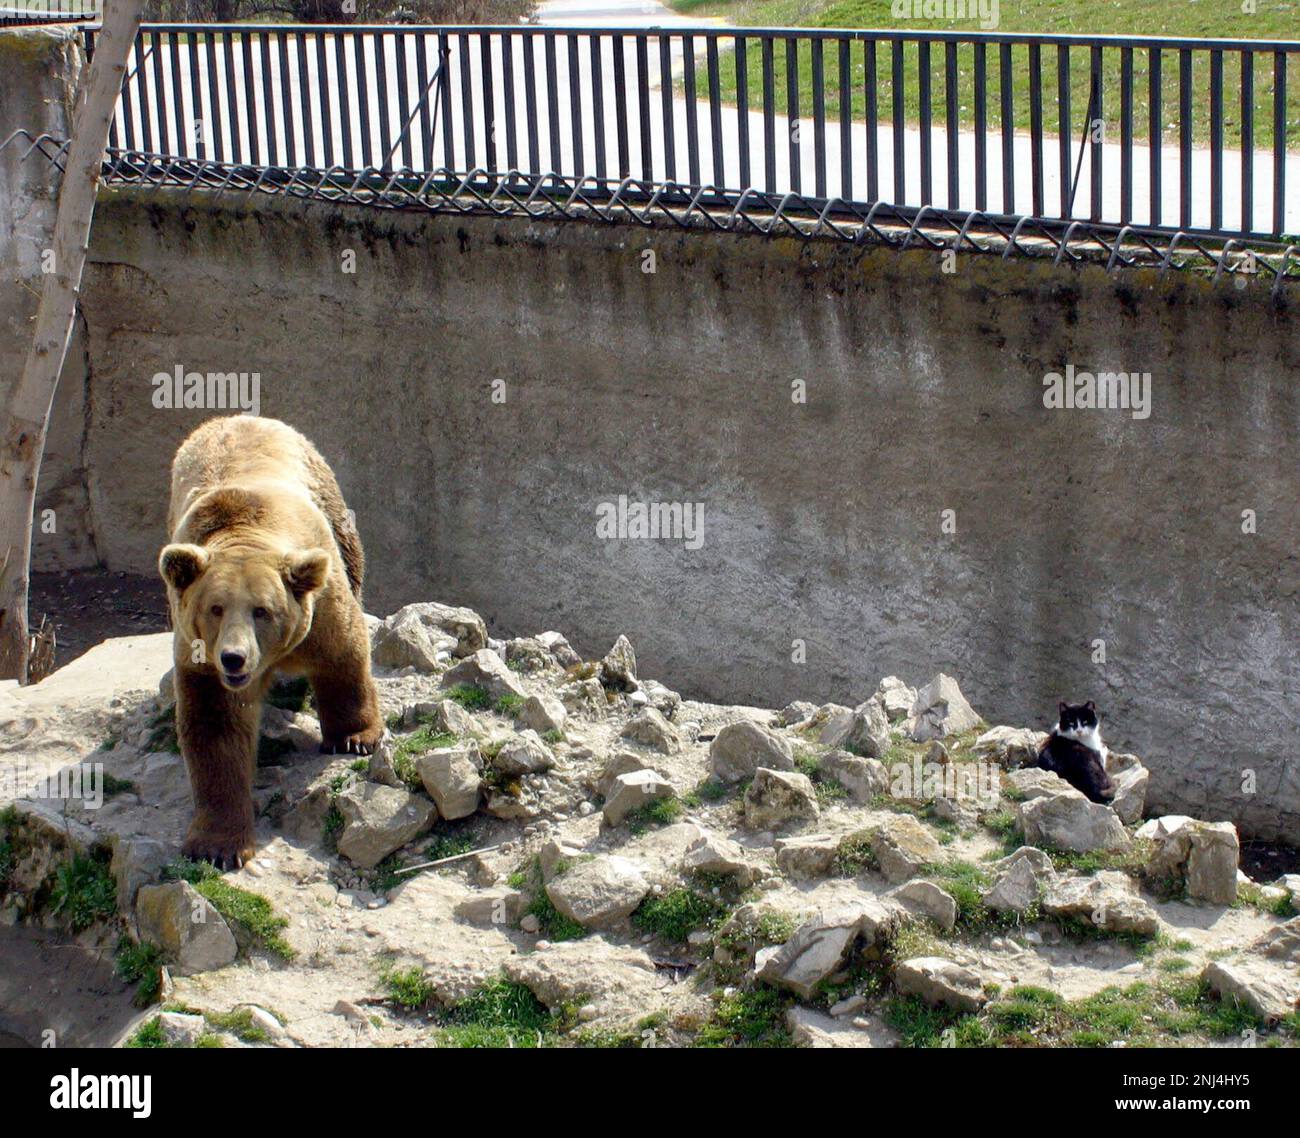 Gatto nel recinto dell'orso Zoo di Skopje. Marzo 2004. Queste fotografie hanno portato ad una serie di articoli di stampa . Nel corso degli anni lo zoo ha ricevuto molte critiche per le condizioni di vita dei suoi animali. Nel 2008 la città ha stanziato 42 milioni di denari in fondi per migliorare lo zoo, e lo zoo ha iniziato a lavorare con l'Associazione europea degli zoo e Aquaria (EAZA) per portare lo zoo agli standard moderni. Nel 2010 erano state costruite nuove recinzioni, il 85% delle mostre più antiche dello zoo era stato rinnovato, lo zoo divenne un candidato all'adesione all'EAZA. Immagine garyroberts/worldwidefeatures.com Foto Stock